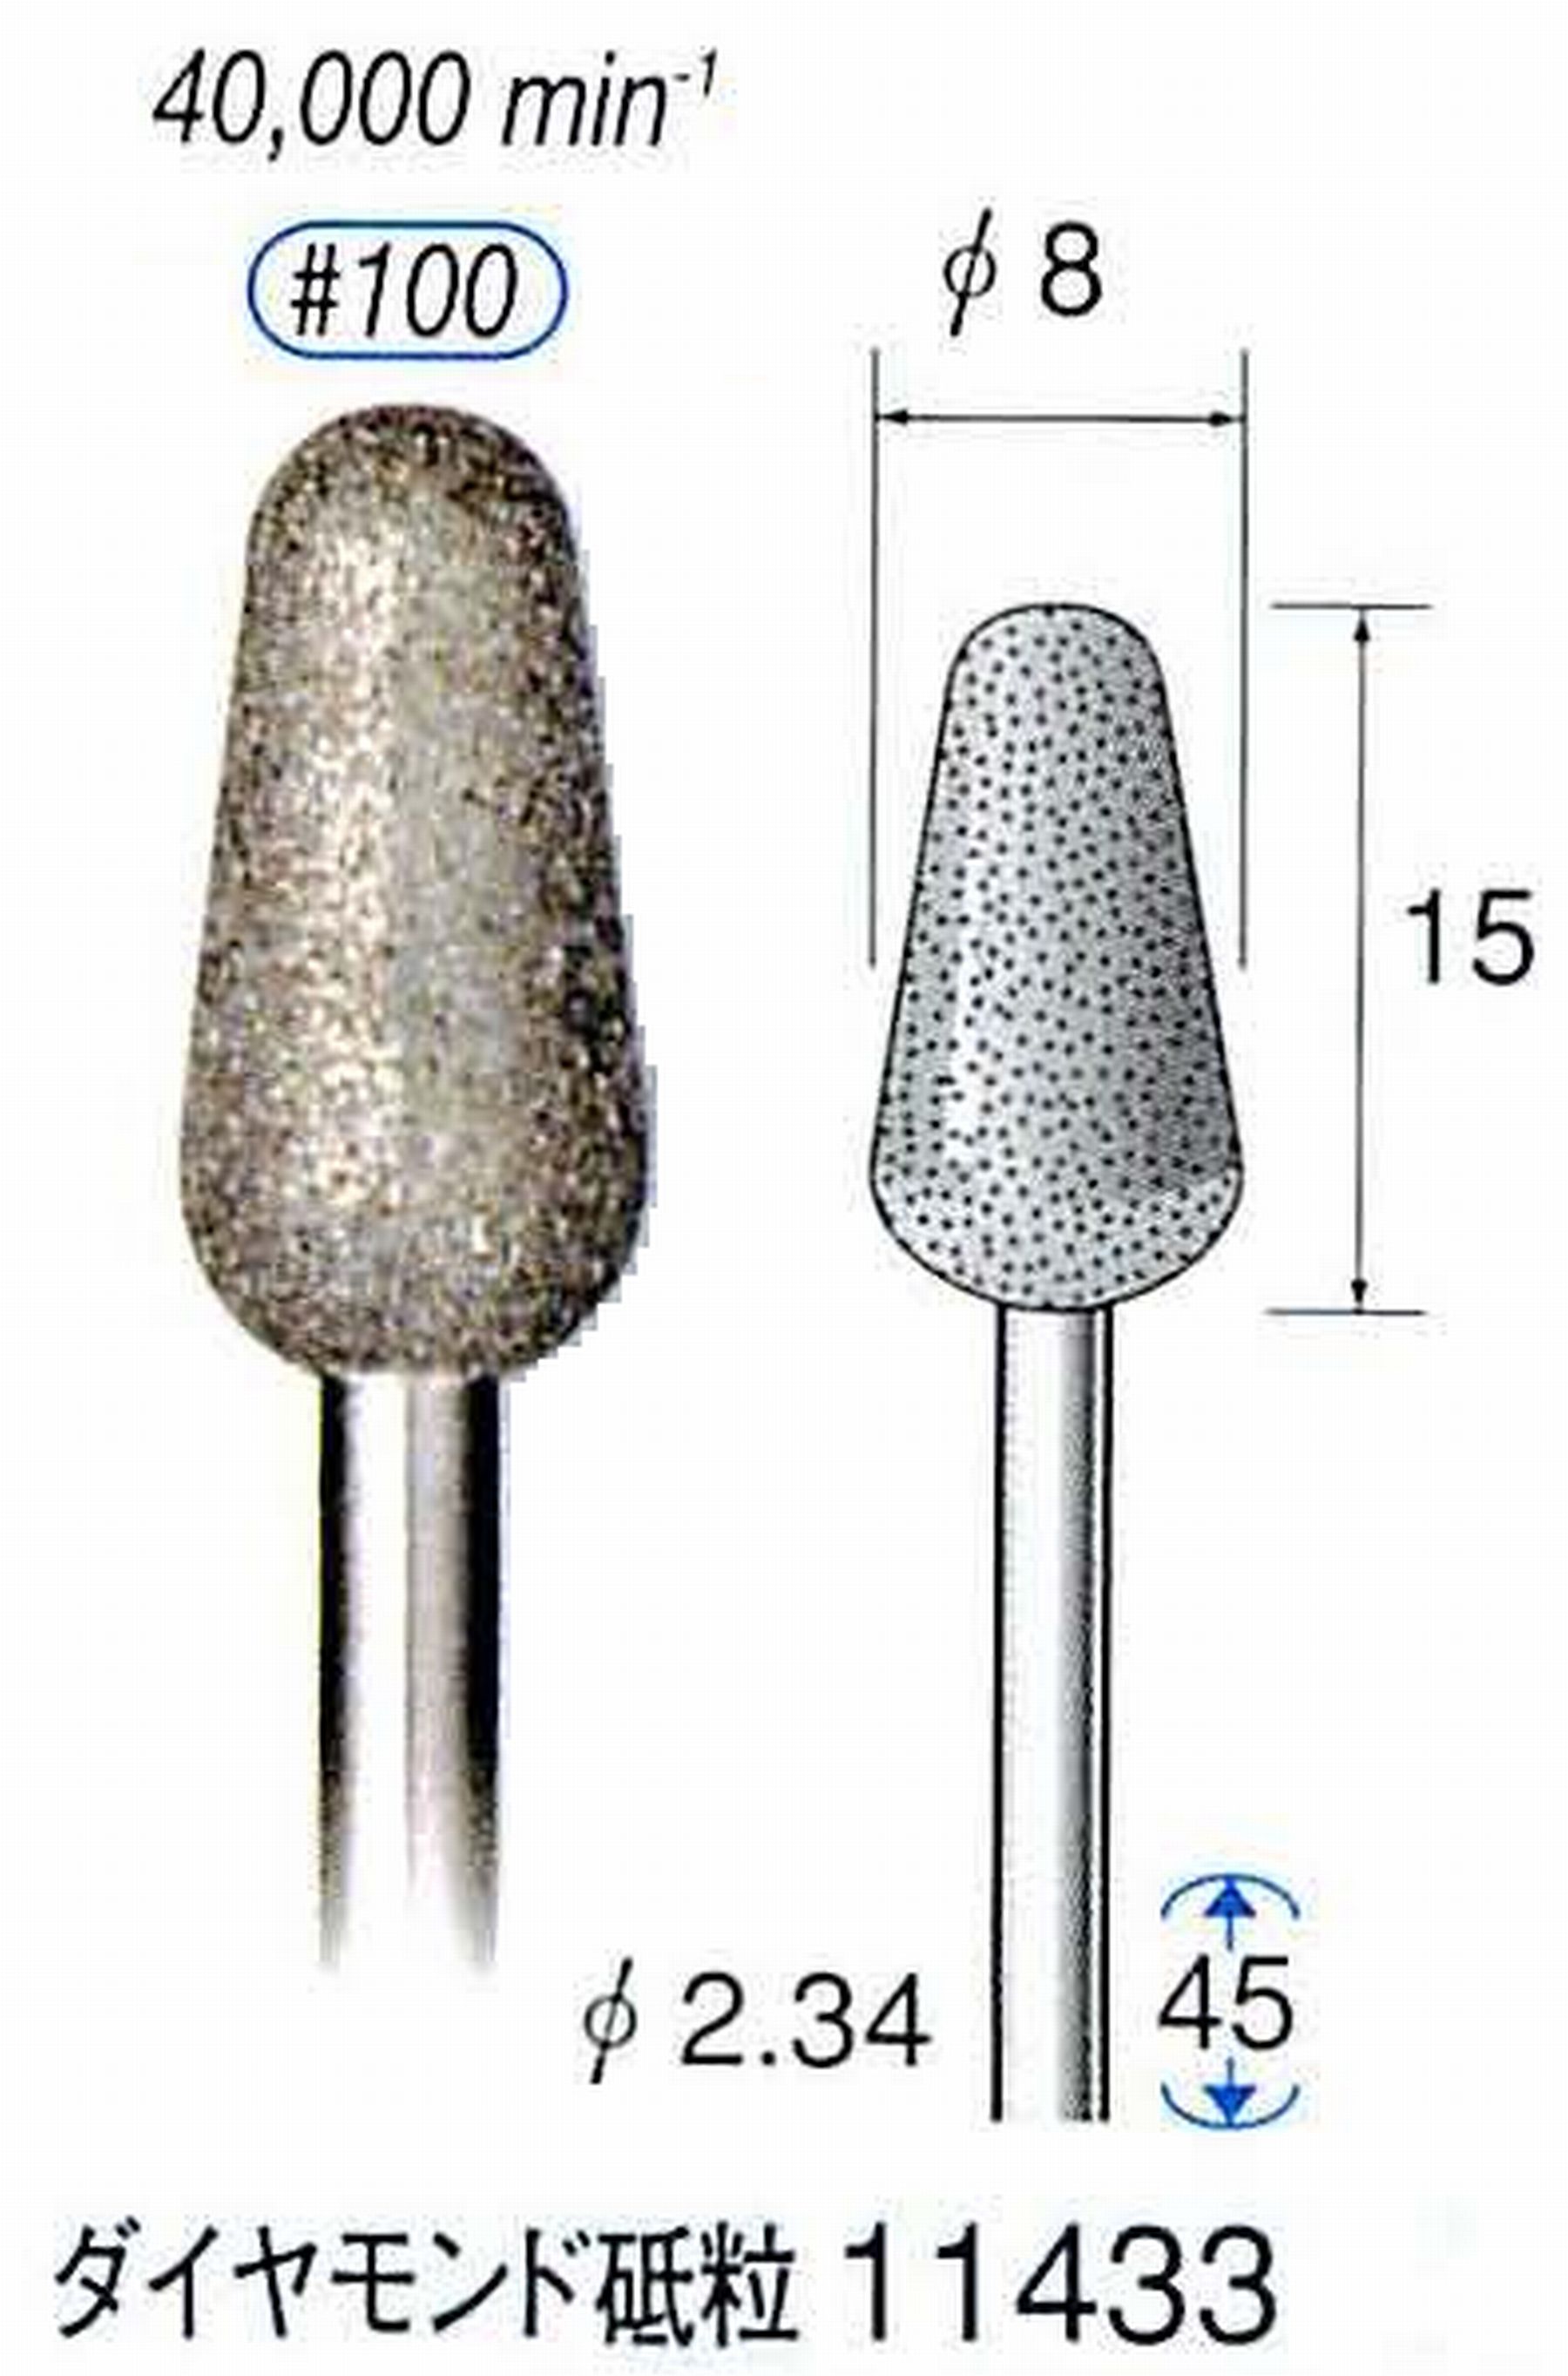 ナカニシ/NAKANISHI 電着ダイヤモンドバー ダイヤモンド砥粒 軸径(シャンク)φ2.34mm 11433